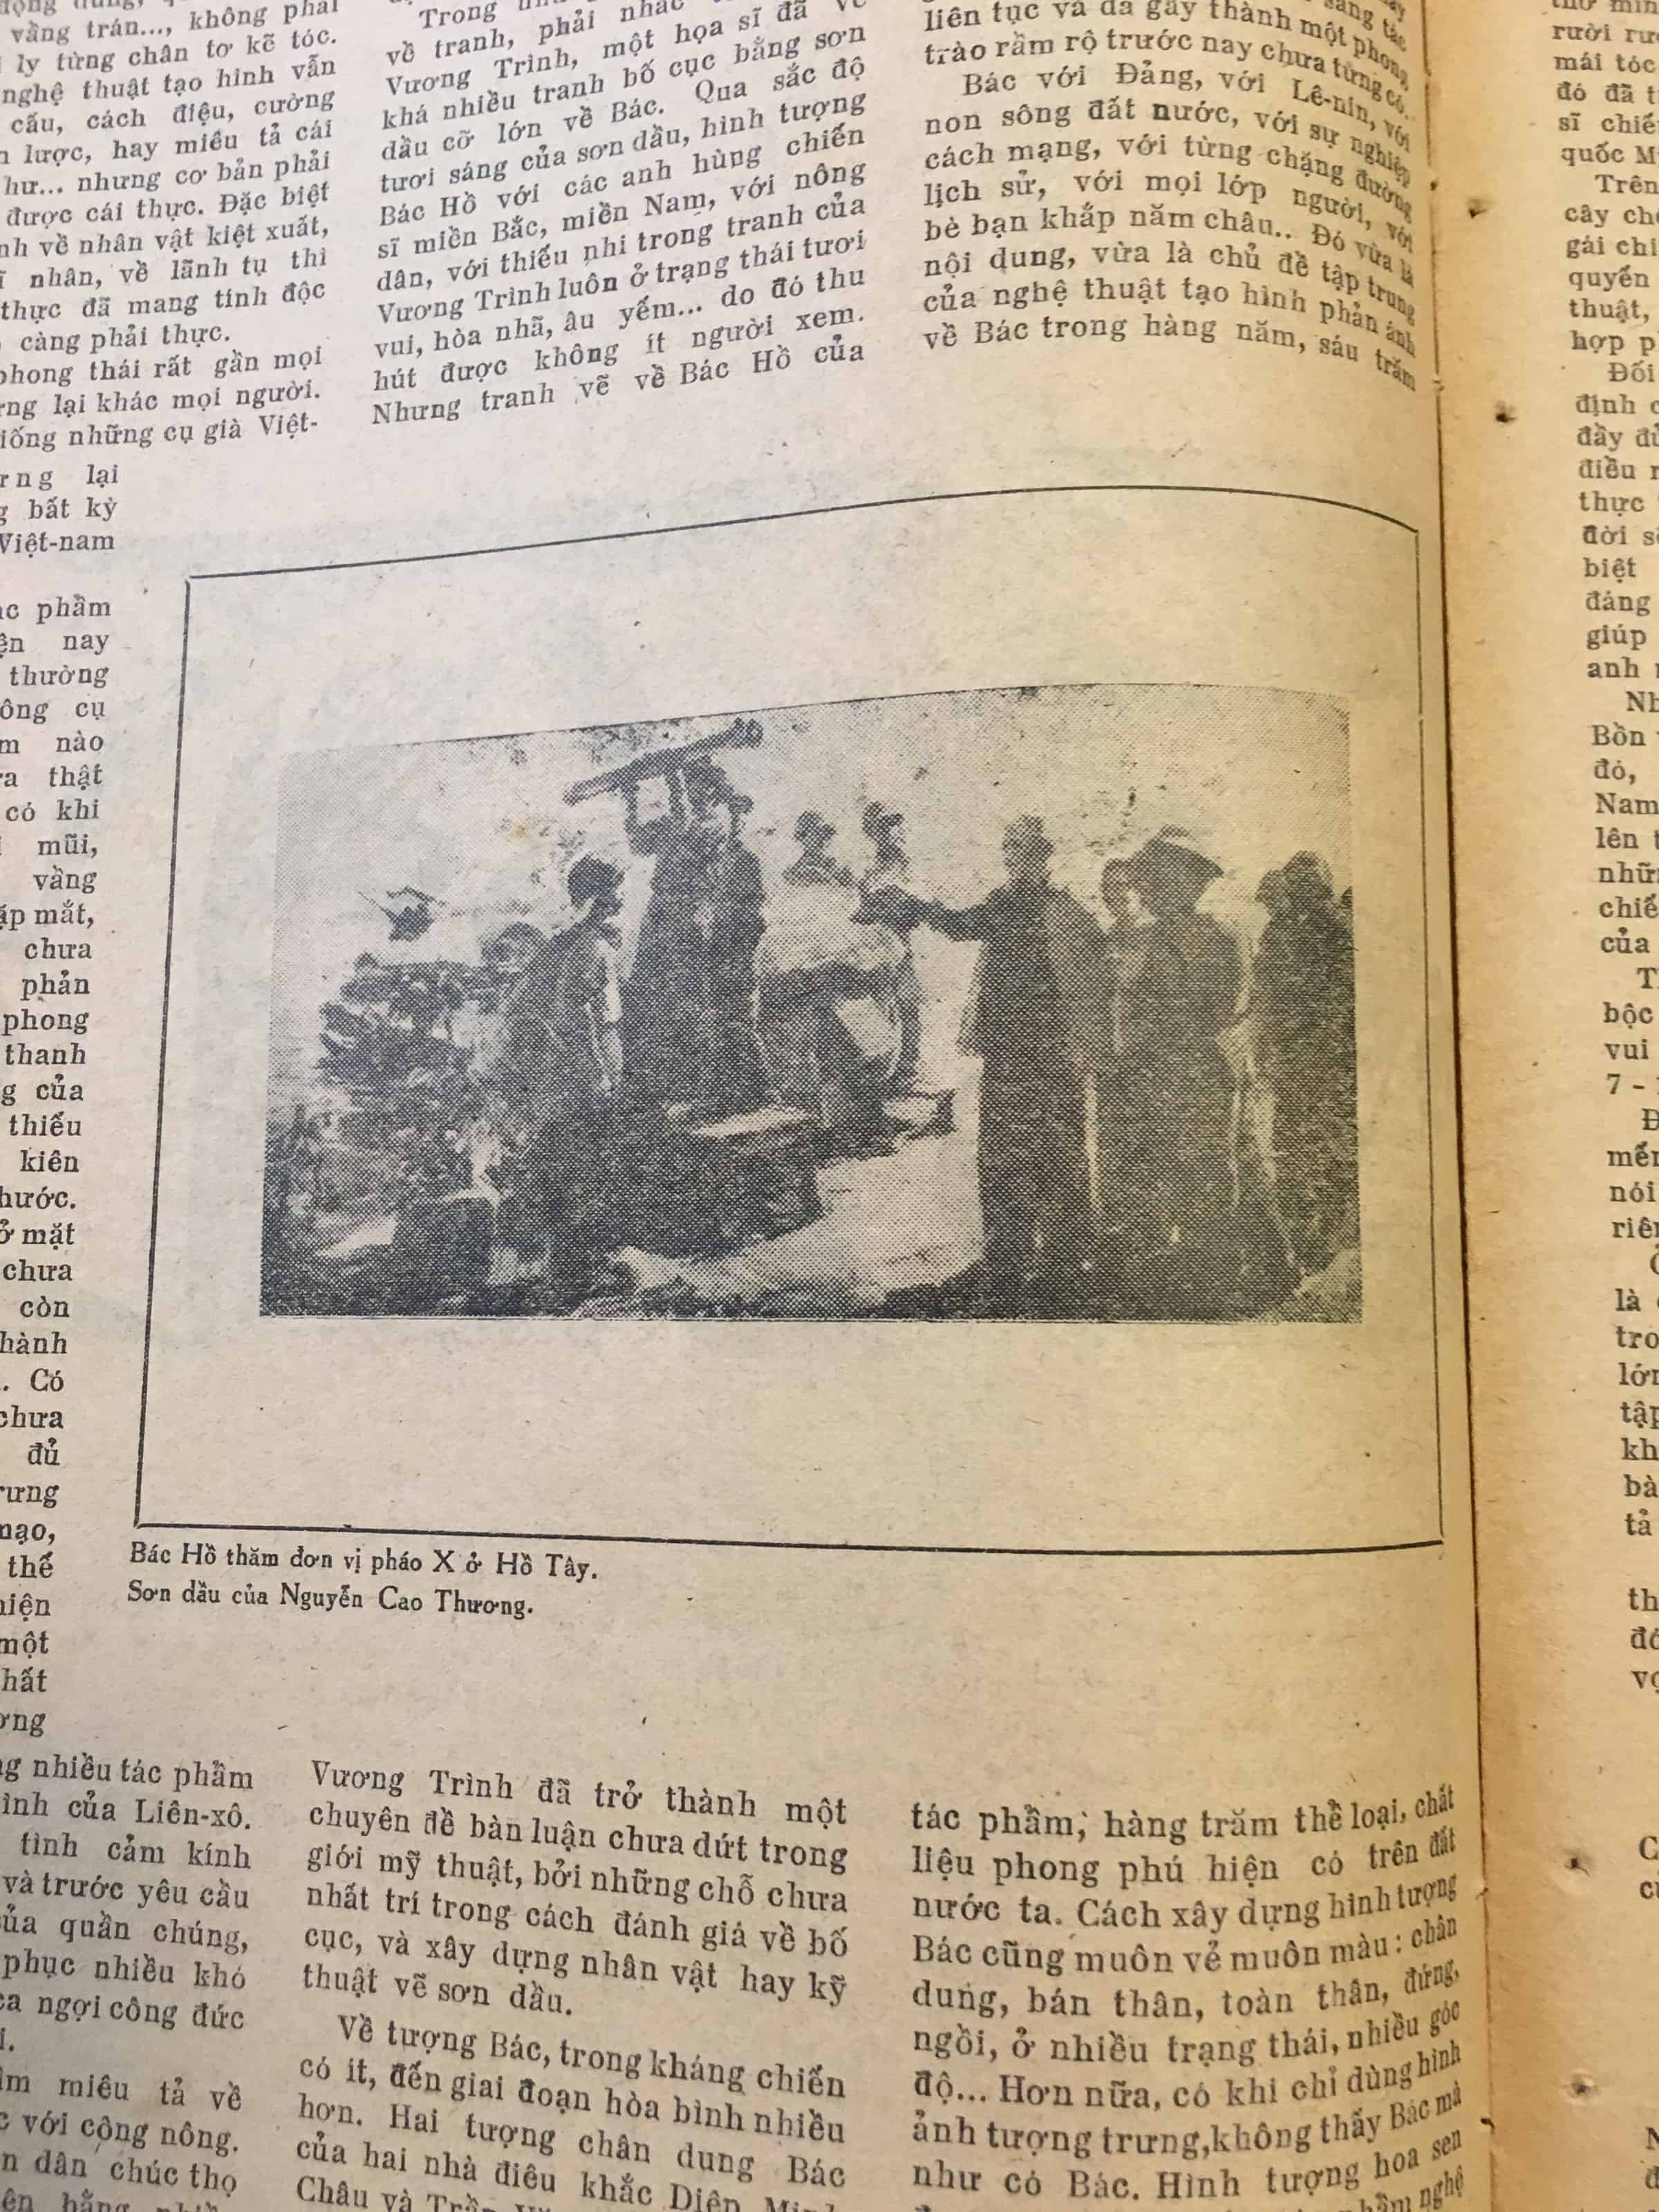 Thật tuyệt vời khi được đọc báo chí Việt Nam Bắc vào ngày 26 tháng 6 năm 1970, vì đó là một nguồn tài liệu lịch sử quan trọng về chiến tranh. Hãy xem hình ảnh liên quan để hiểu thêm chi tiết về những bài báo trên tờ báo này và những sự kiện đang diễn ra tại thời điểm đó.